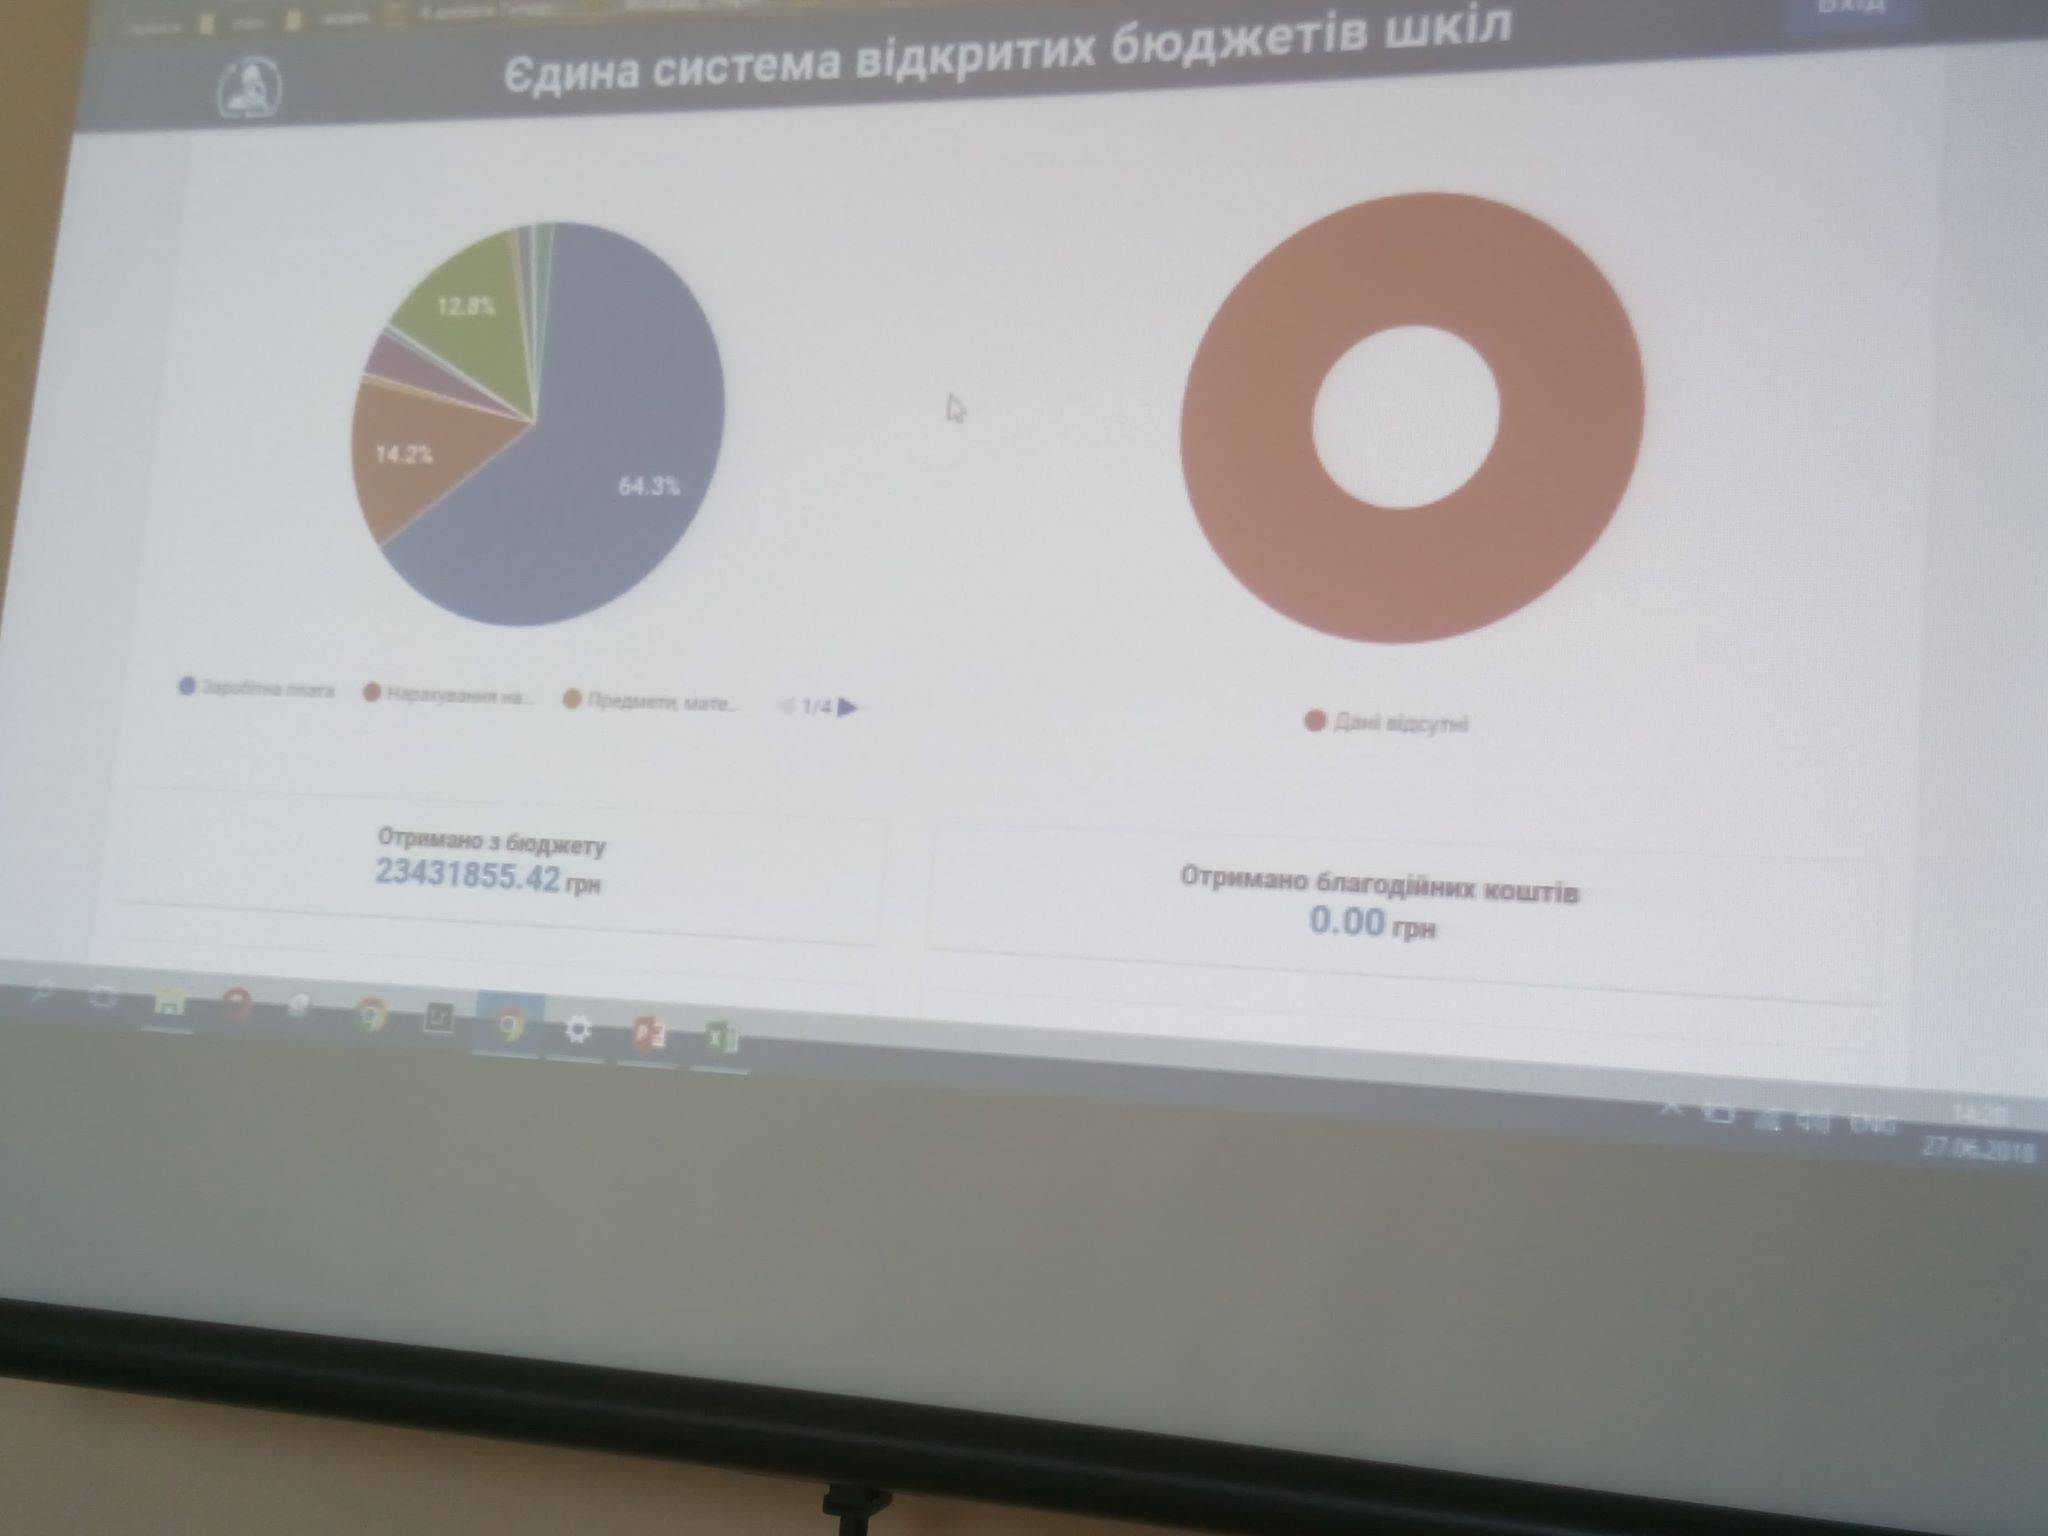 Станут ли бюджеты днепровских школ открытыми? Новости Днепра